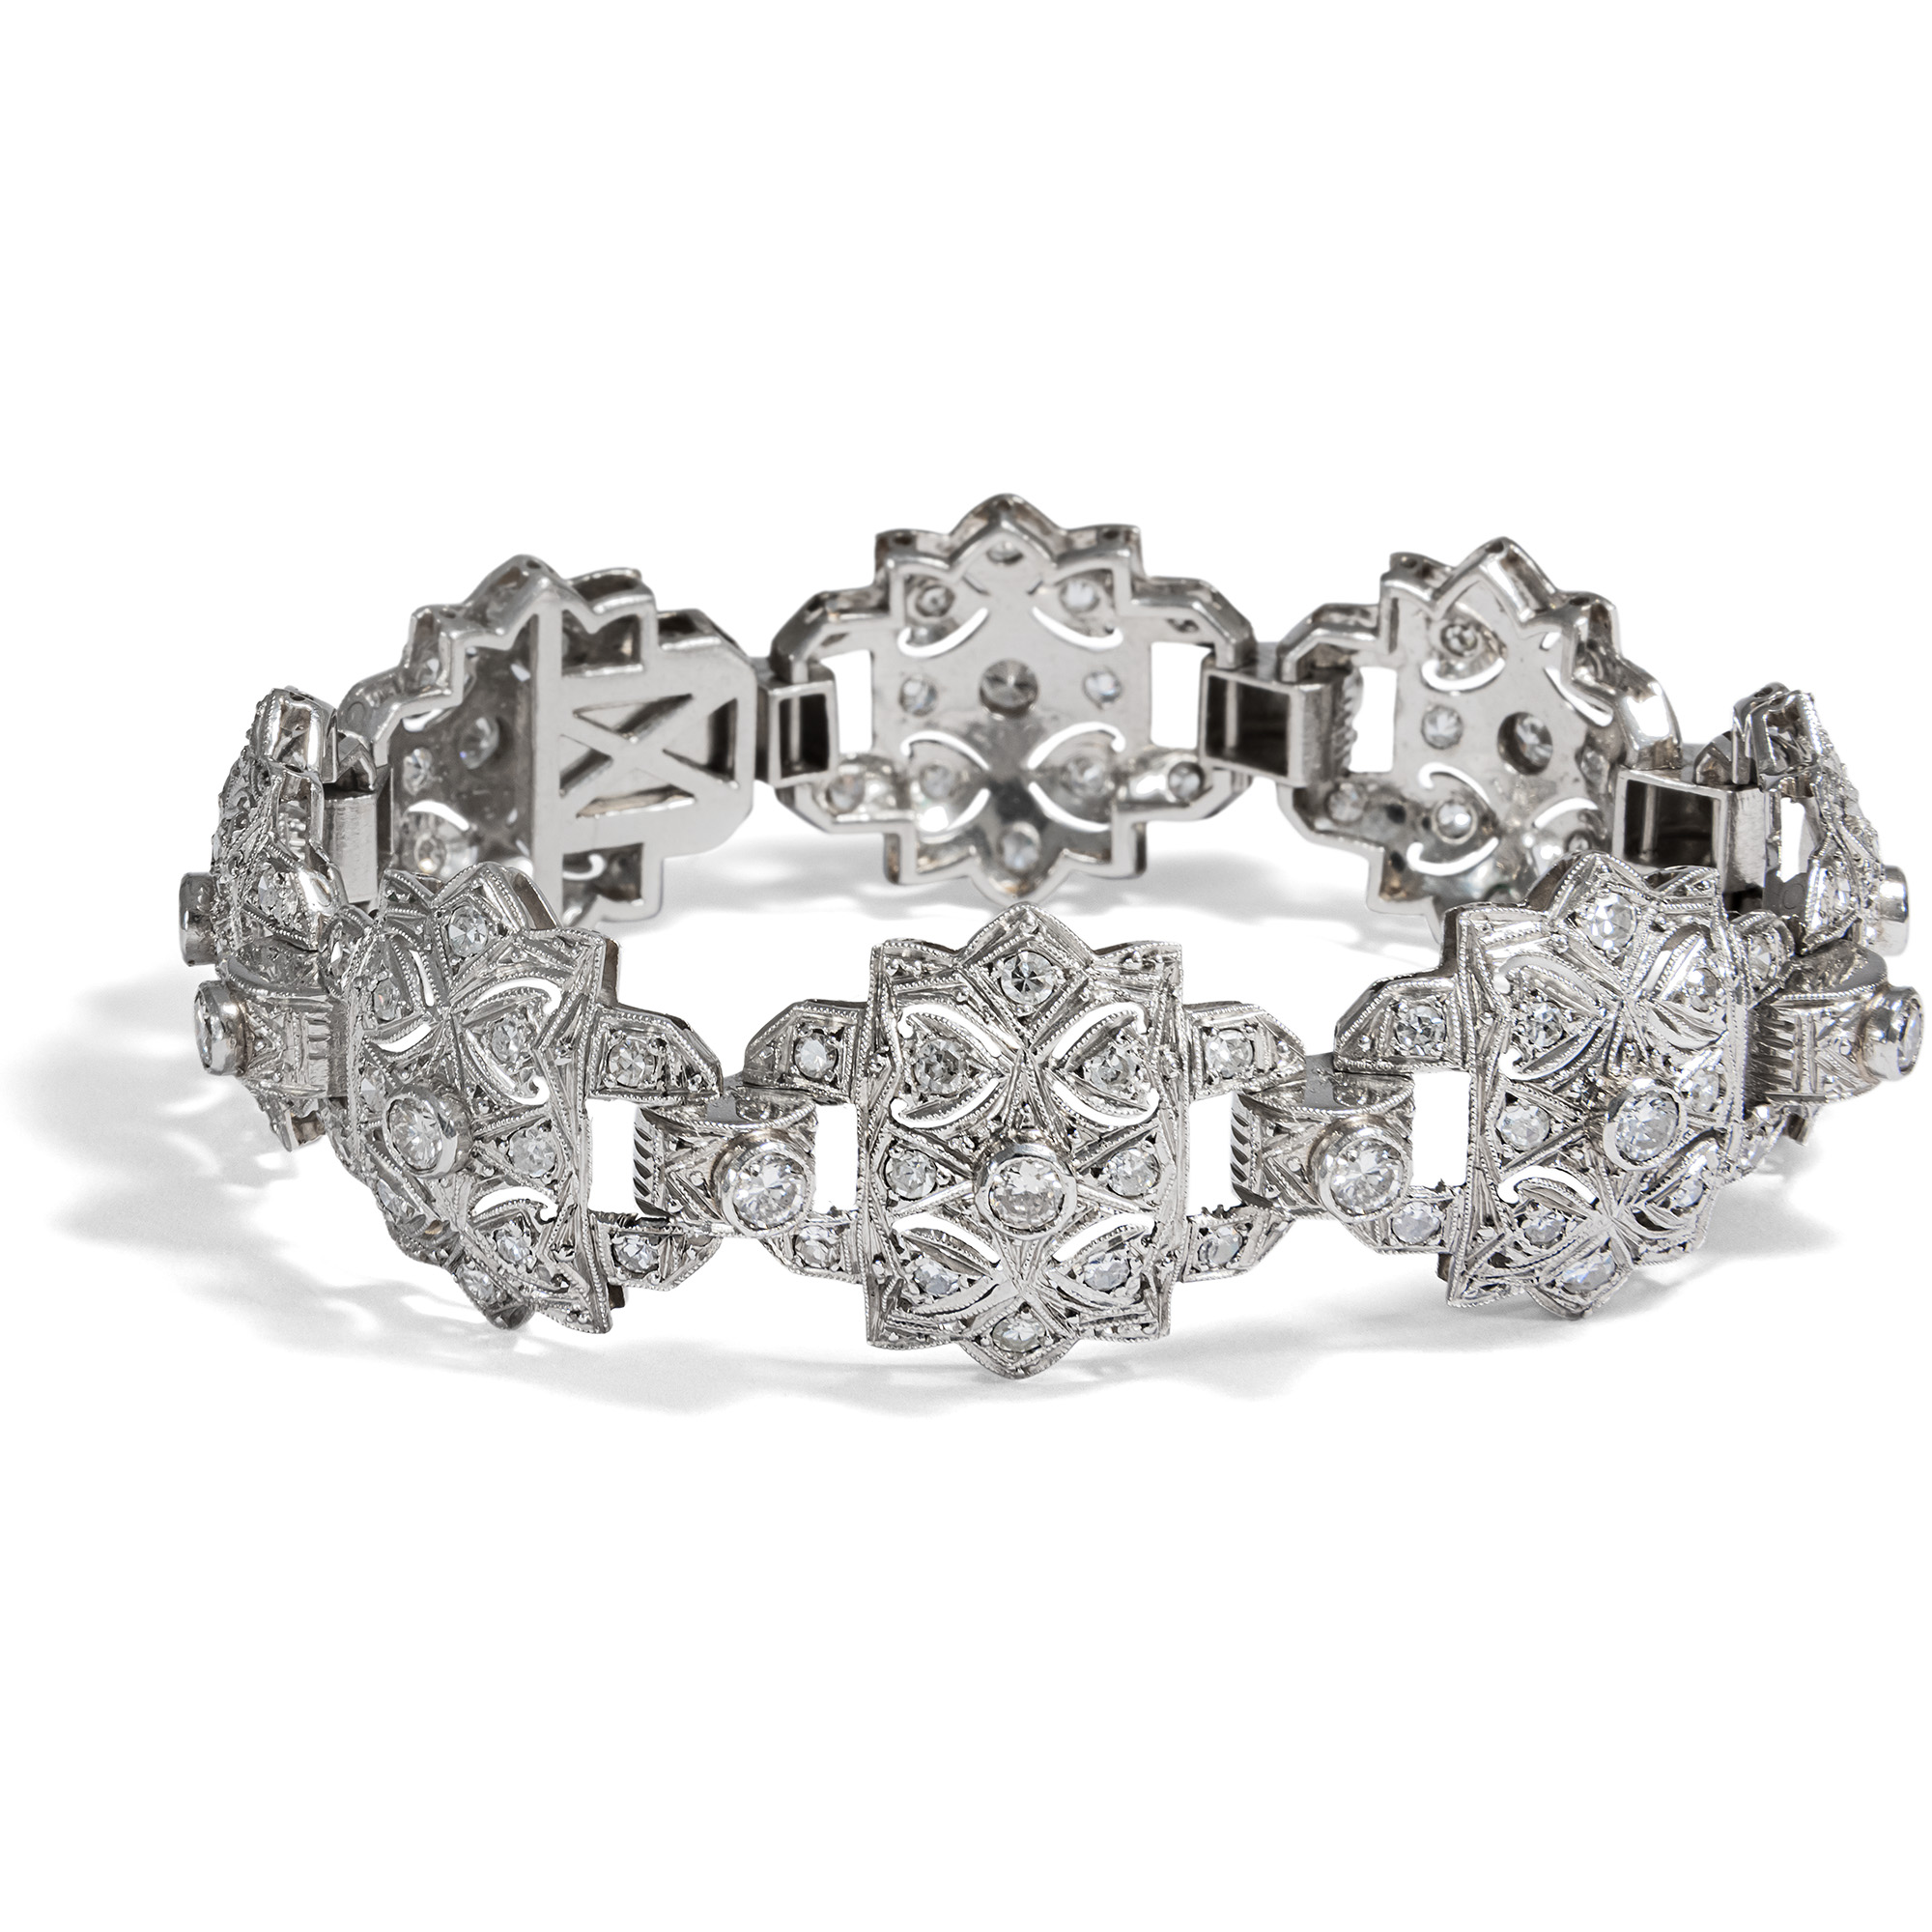 Precious Art Deco Diamond Bracelet Made of Platinum, ca. 1930